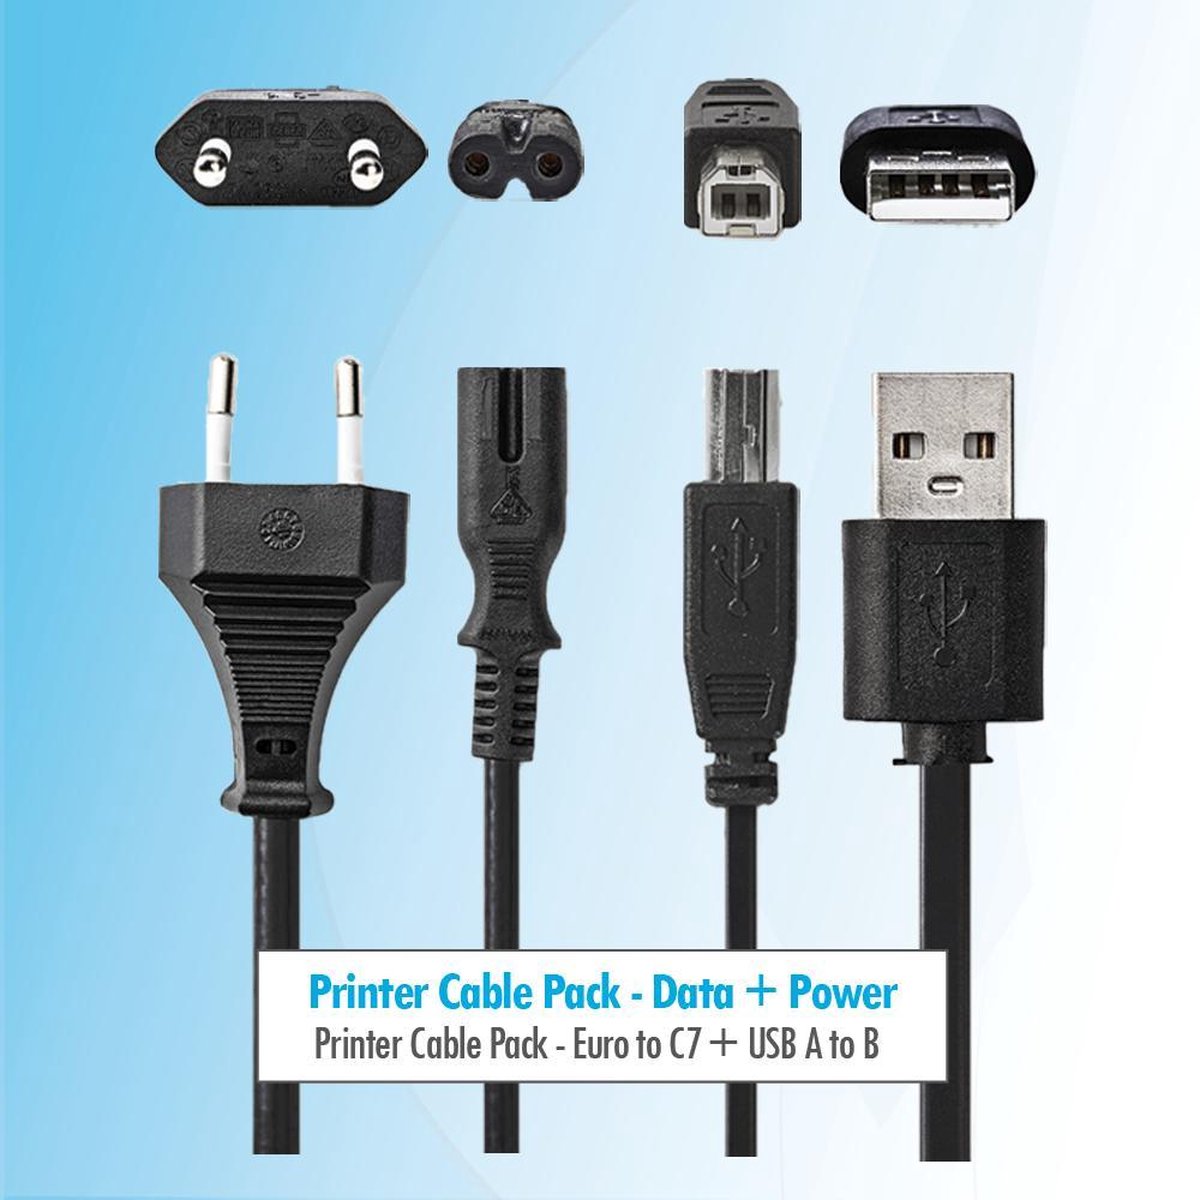 Budget Printer kabel pakket 3 meter Usb B kabel + stroom kabel voedingskabel c7